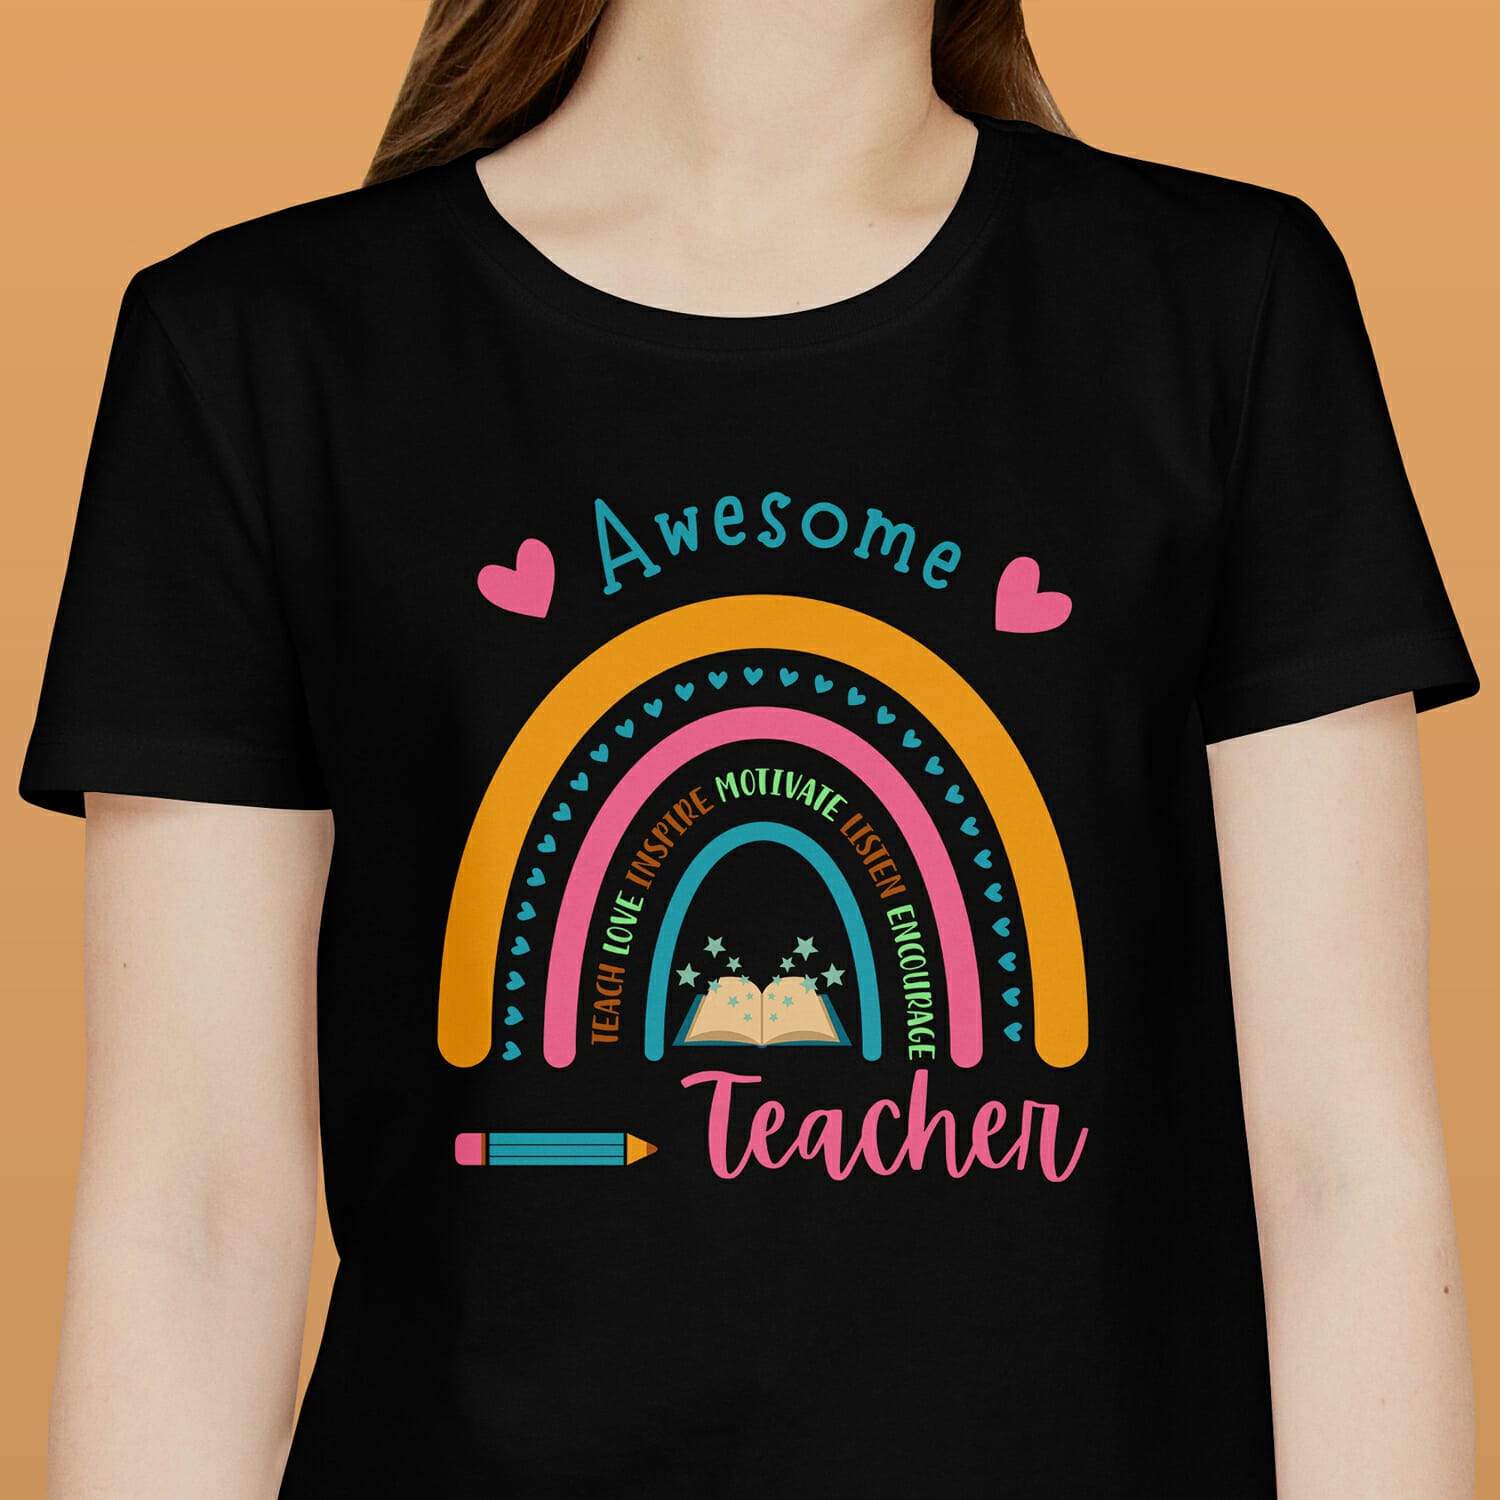 Awesome Teacher T-shirt Design